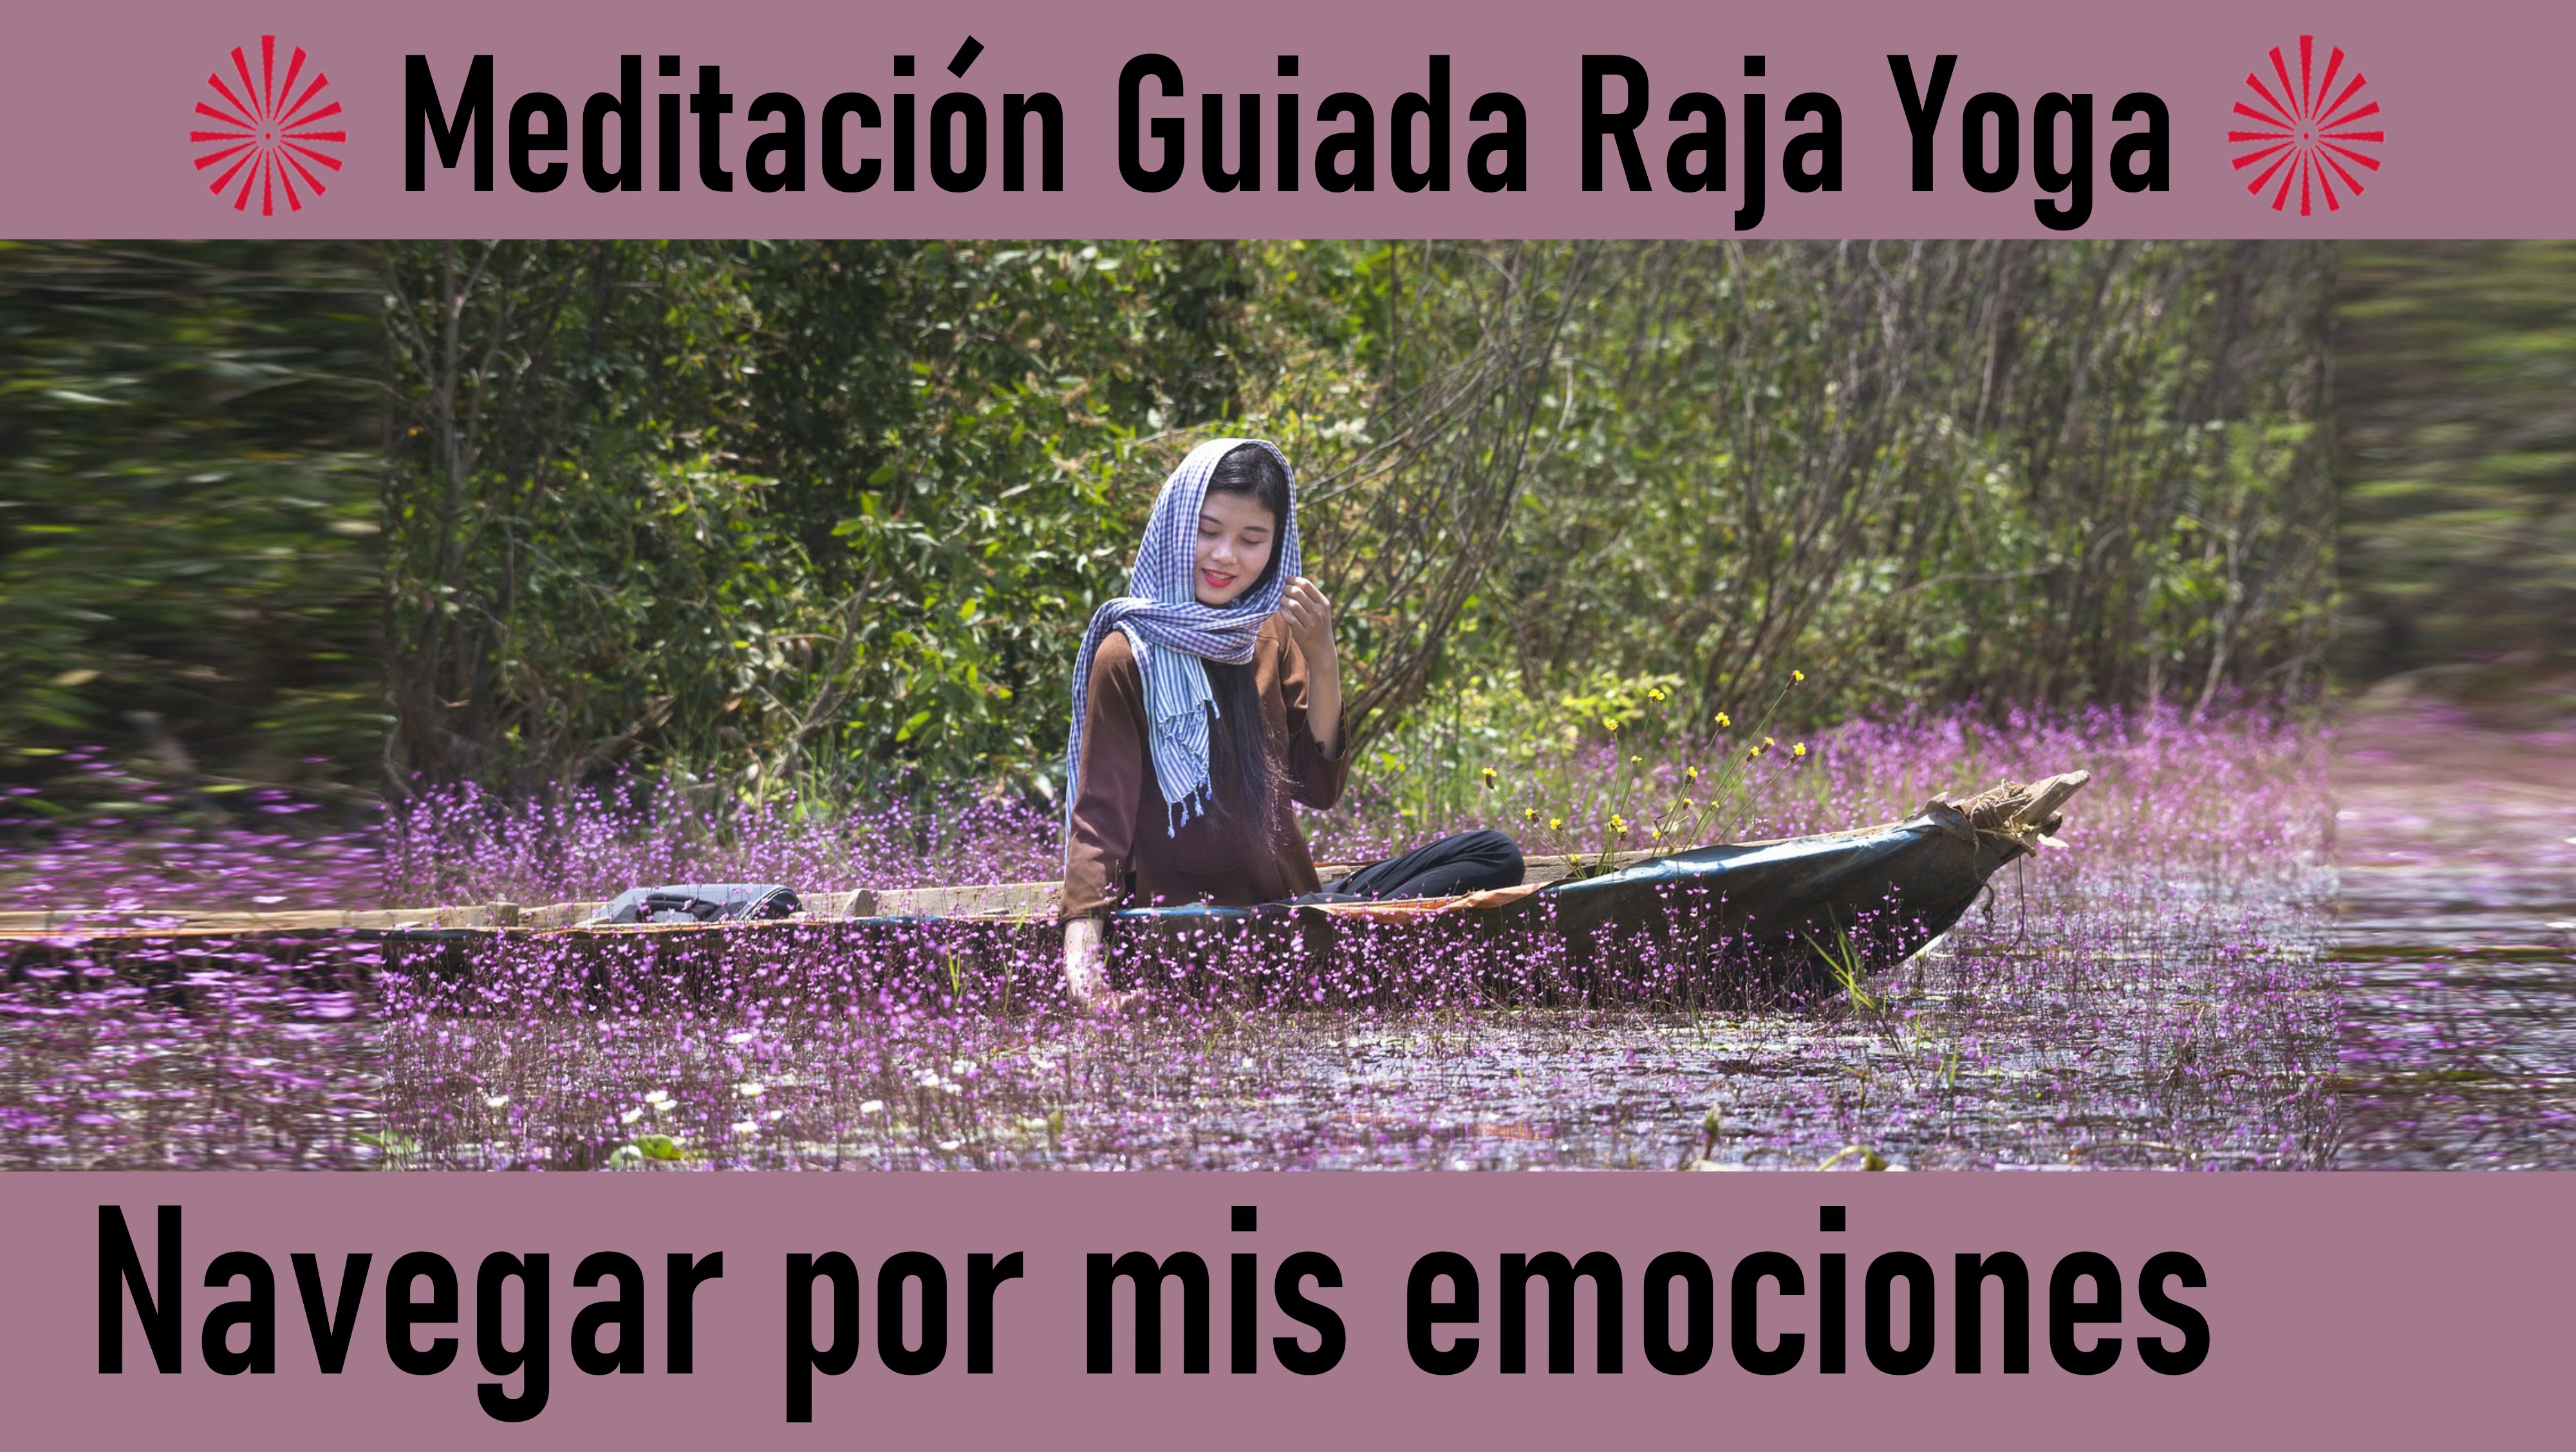 Meditación Raja Yoga: Navegar por mis emociones (20 Junio 2020) On-line desde Valencia